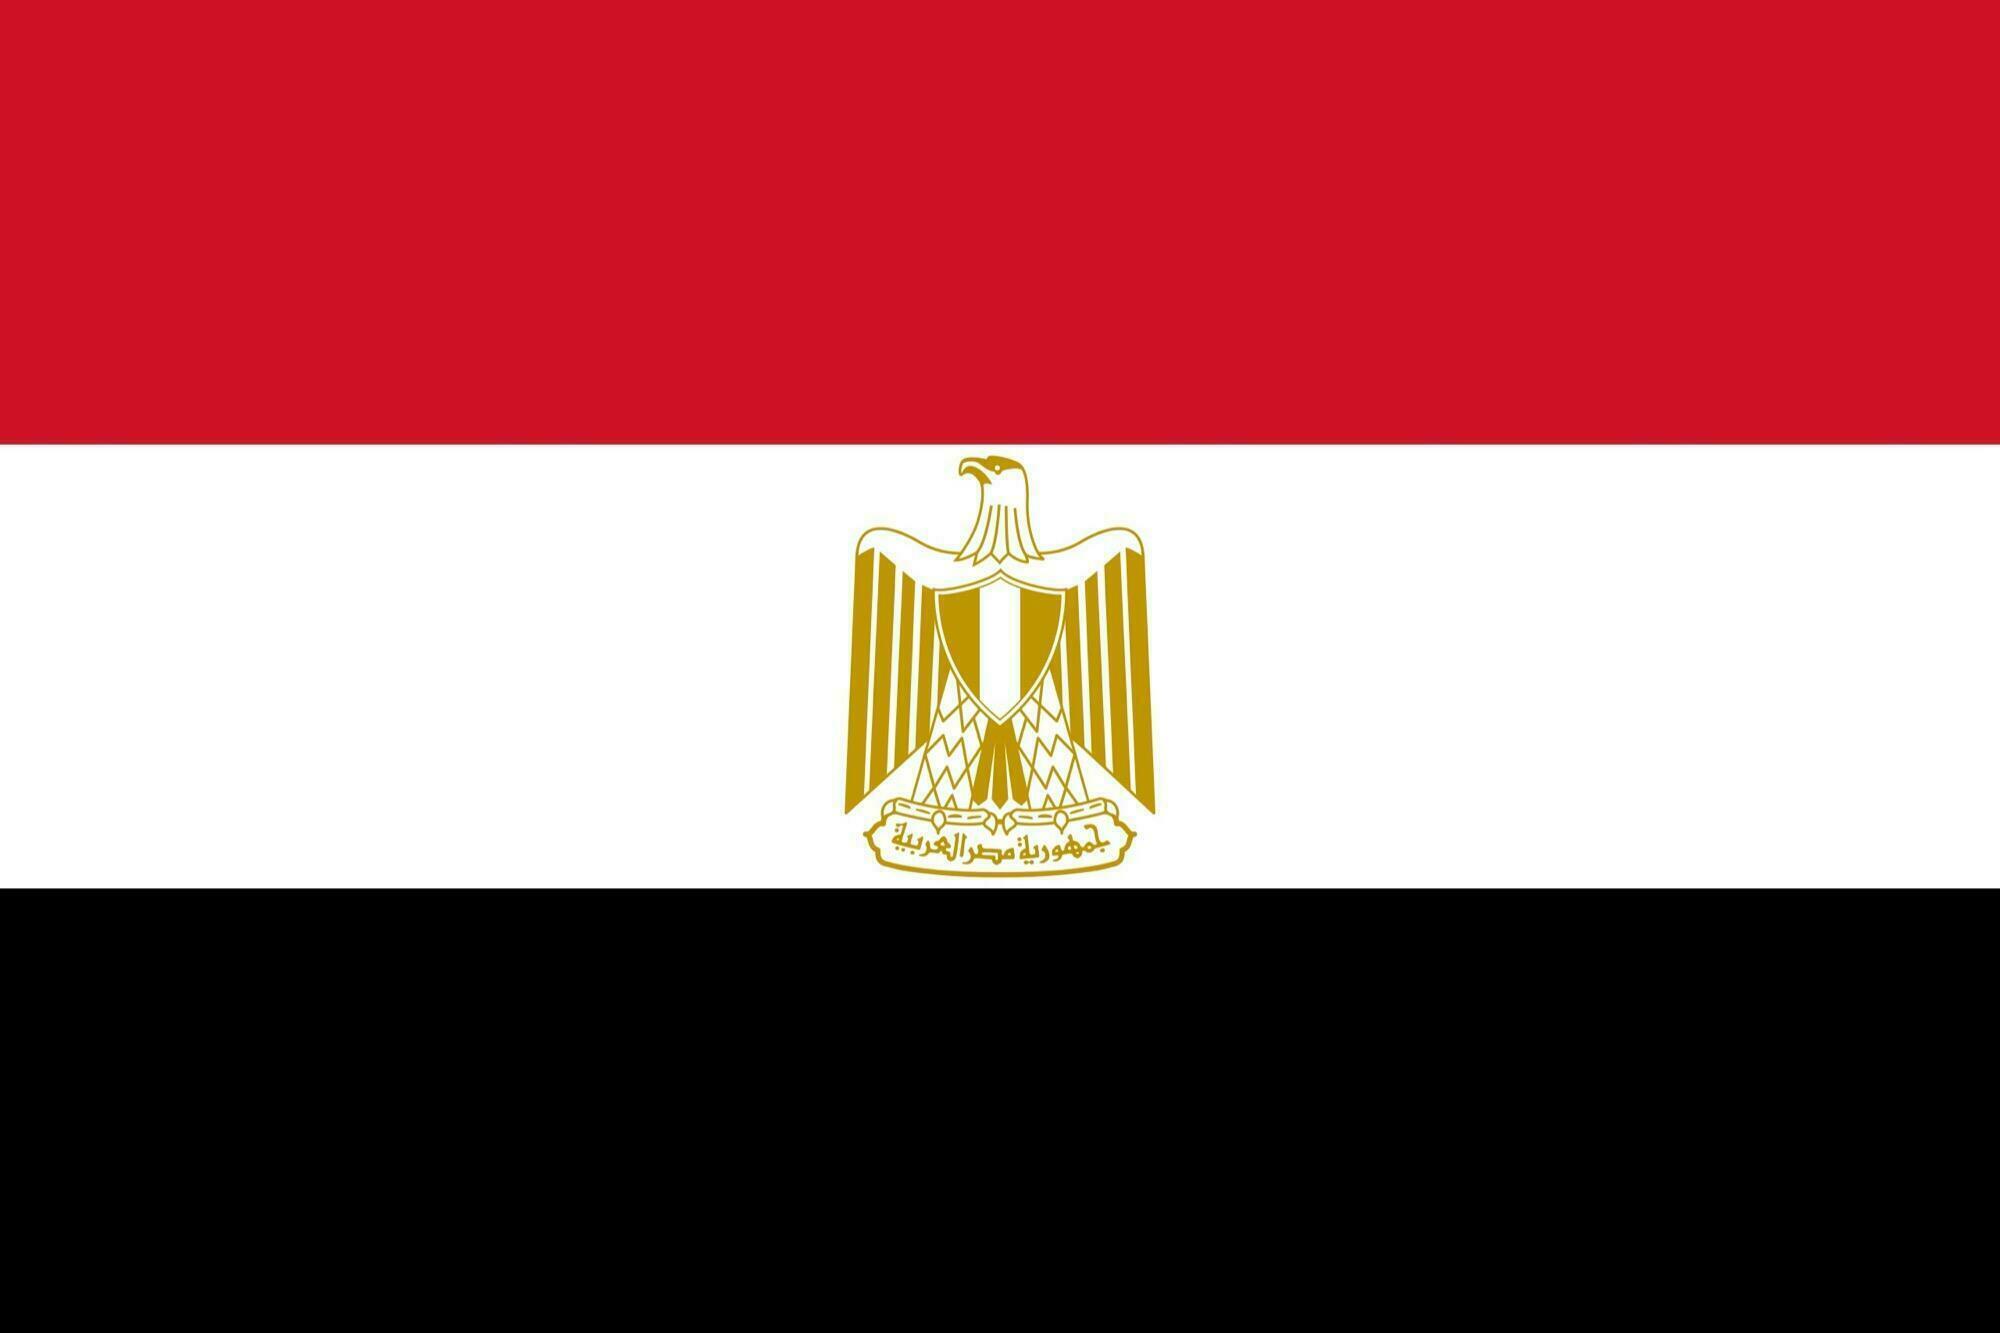 Le drapeau de l'Égypte : signification, histoire, photos